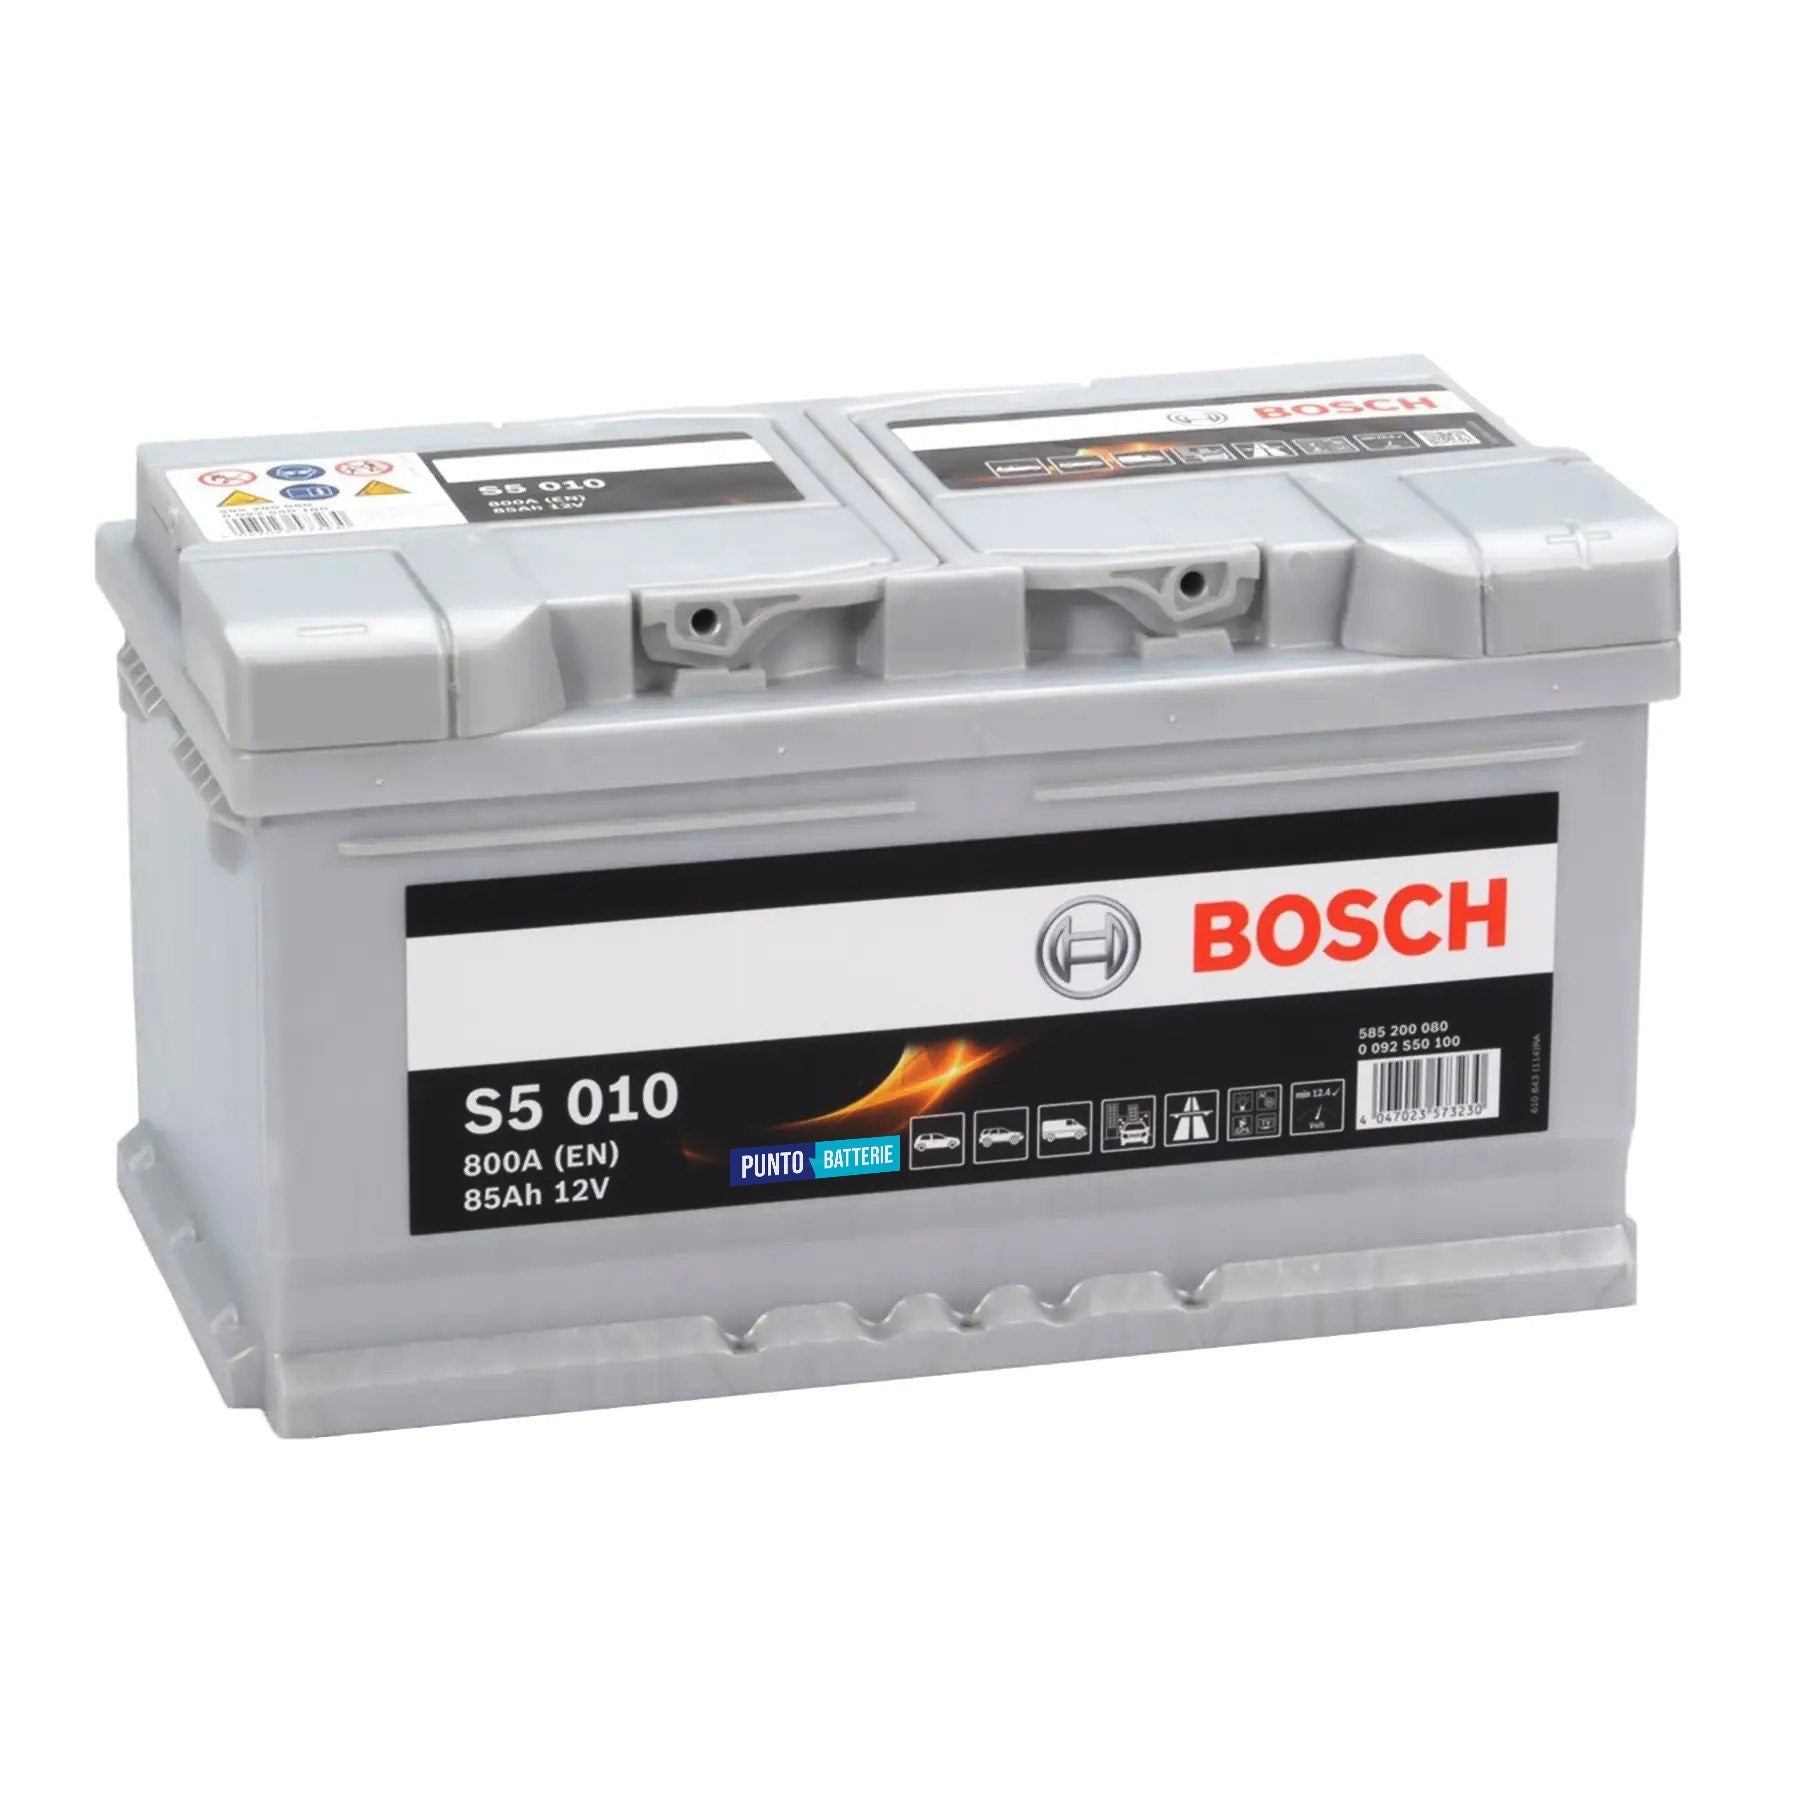 Batteria originale Bosch S5 S5 010, dimensioni 315 x 175 x 175, polo positivo a destra, 12 volt, 85 amperora, 800 ampere. Batteria per auto e veicoli leggeri.